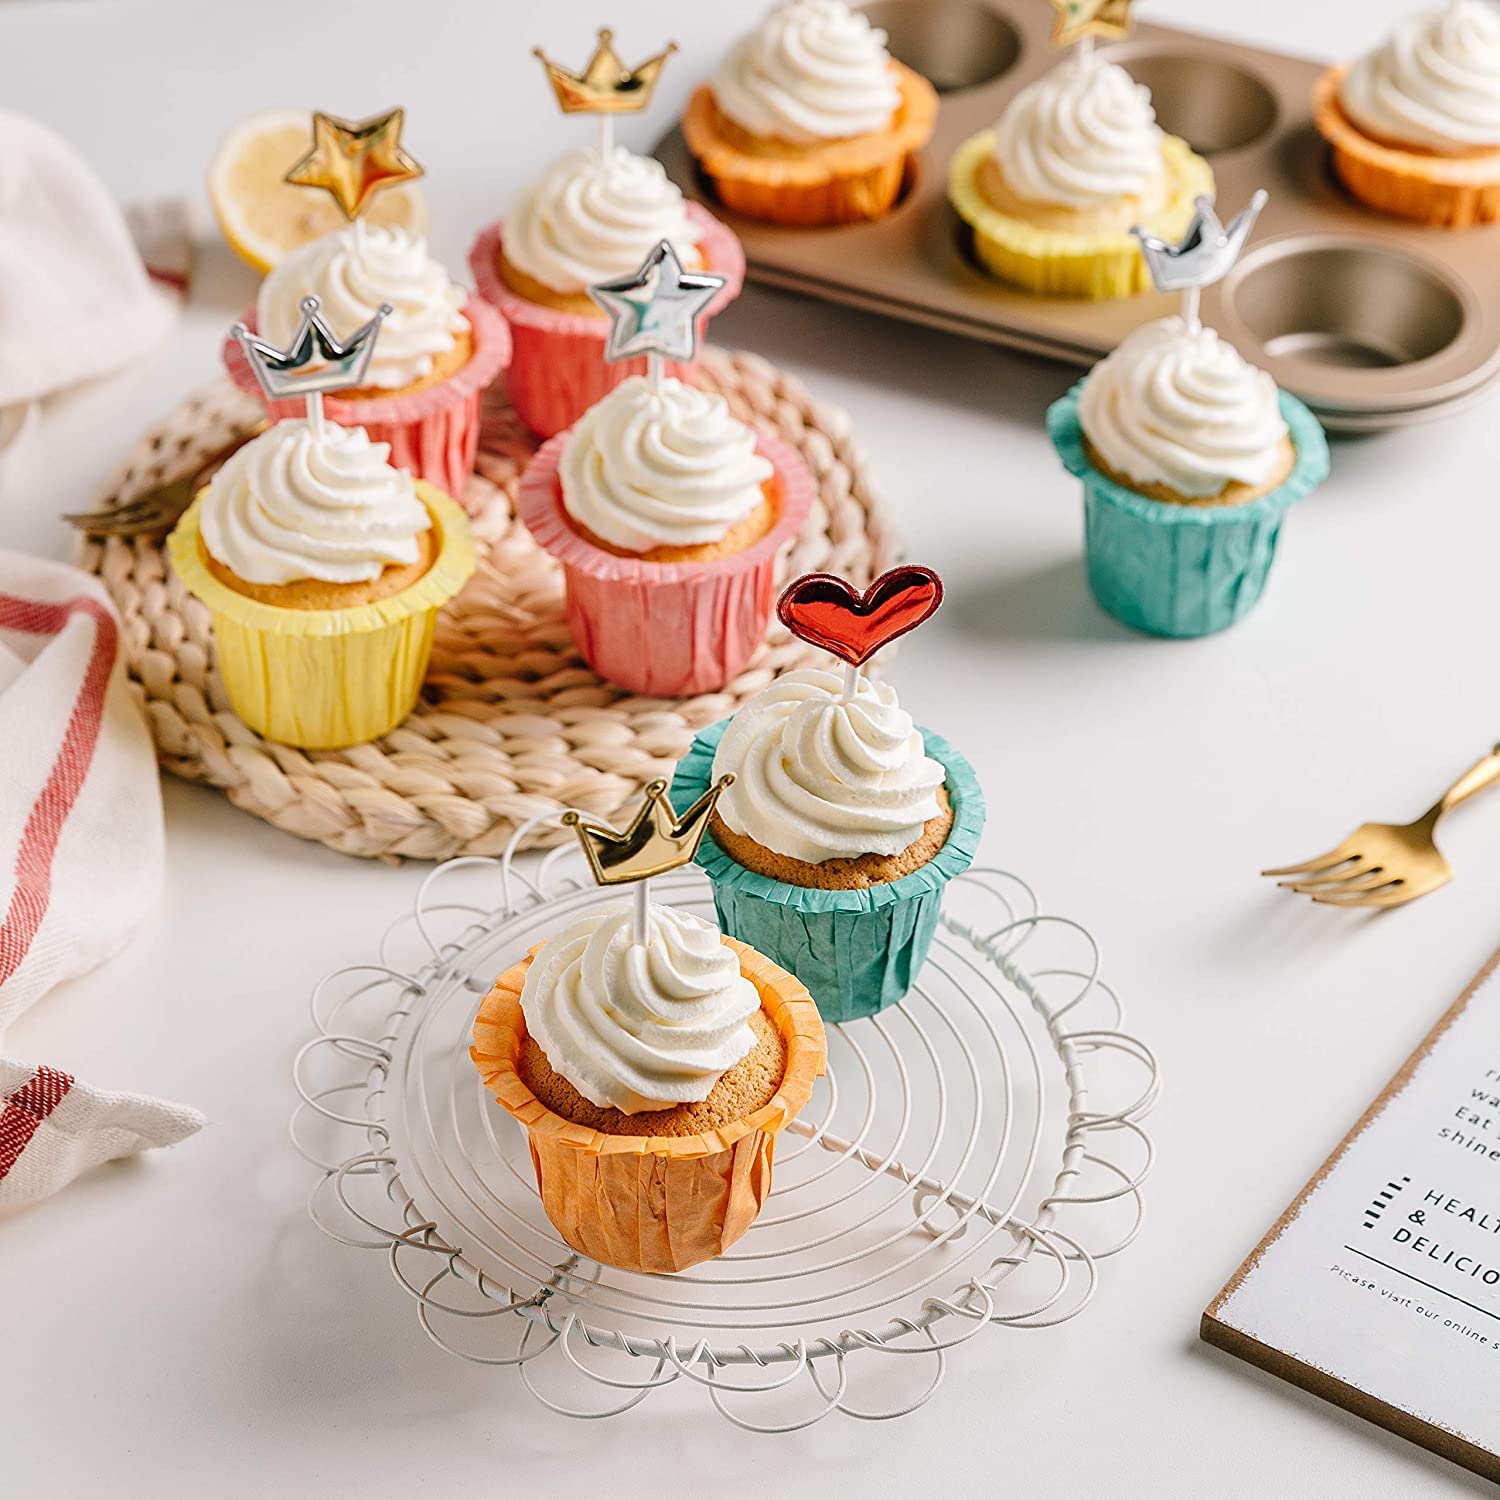 Cupcake Creations Muffin Top & Tart Baking Cups, reviewed - Baking Bites